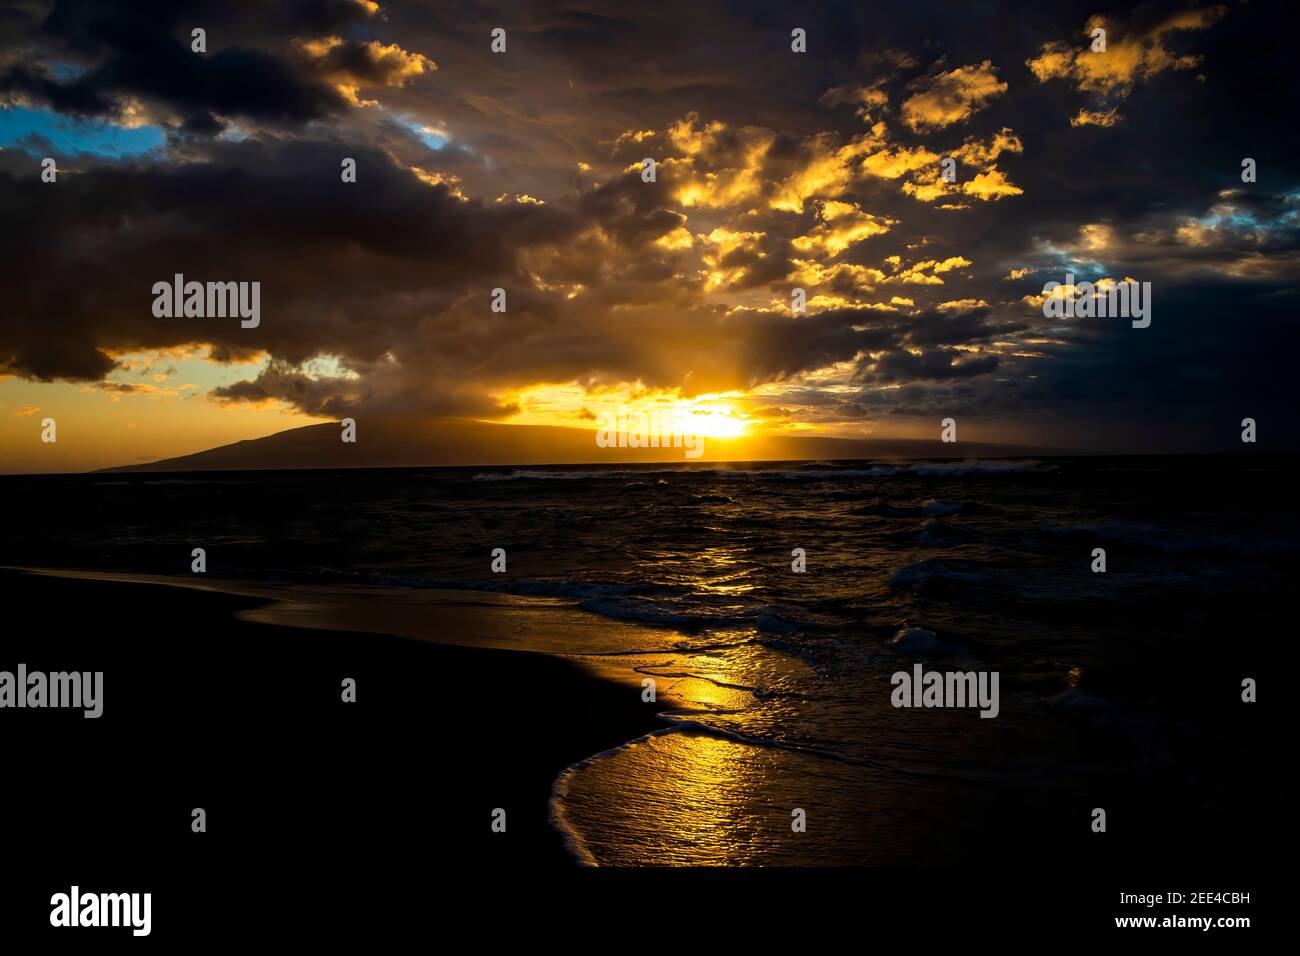 Goldene Sonnenuntergangslandschaft mit Lichtstrahlen, die von unter den Wolken strahlen, während die Sonne hinter der tropischen Insel untergeht. Stockfoto